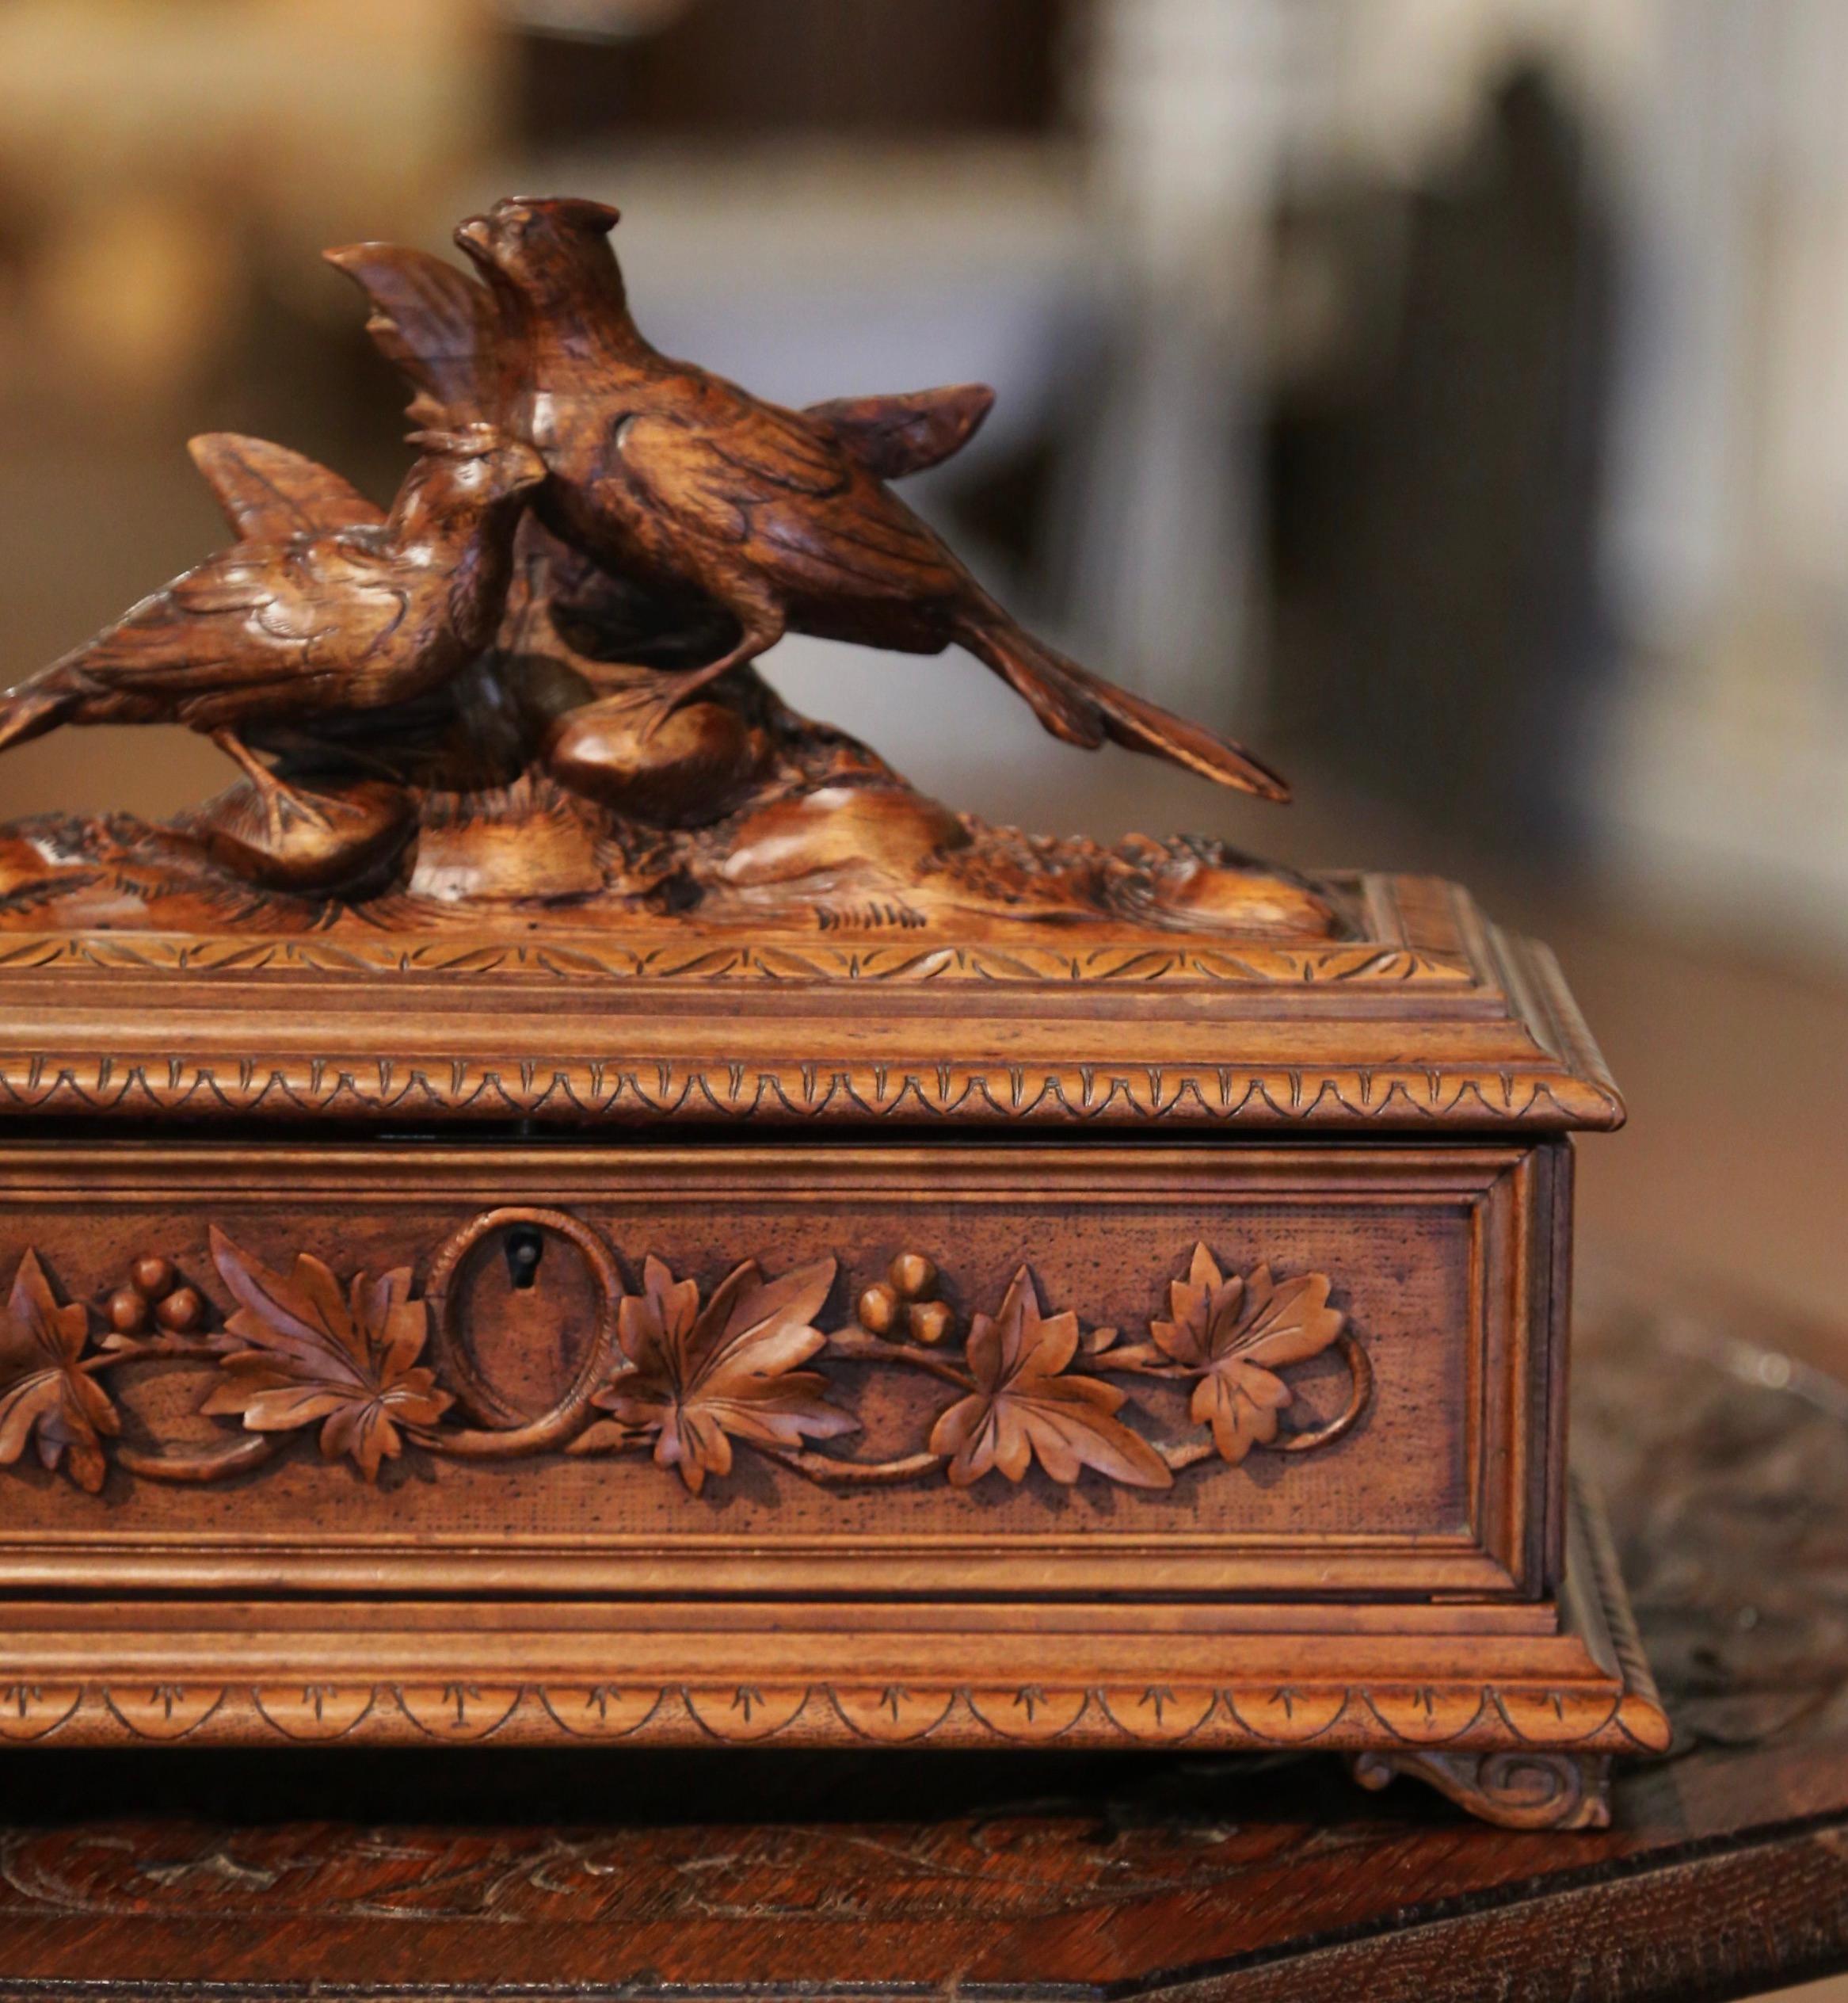 19th Century French Black Forest Carved Walnut Jewelry Box with Bird Motifs 1